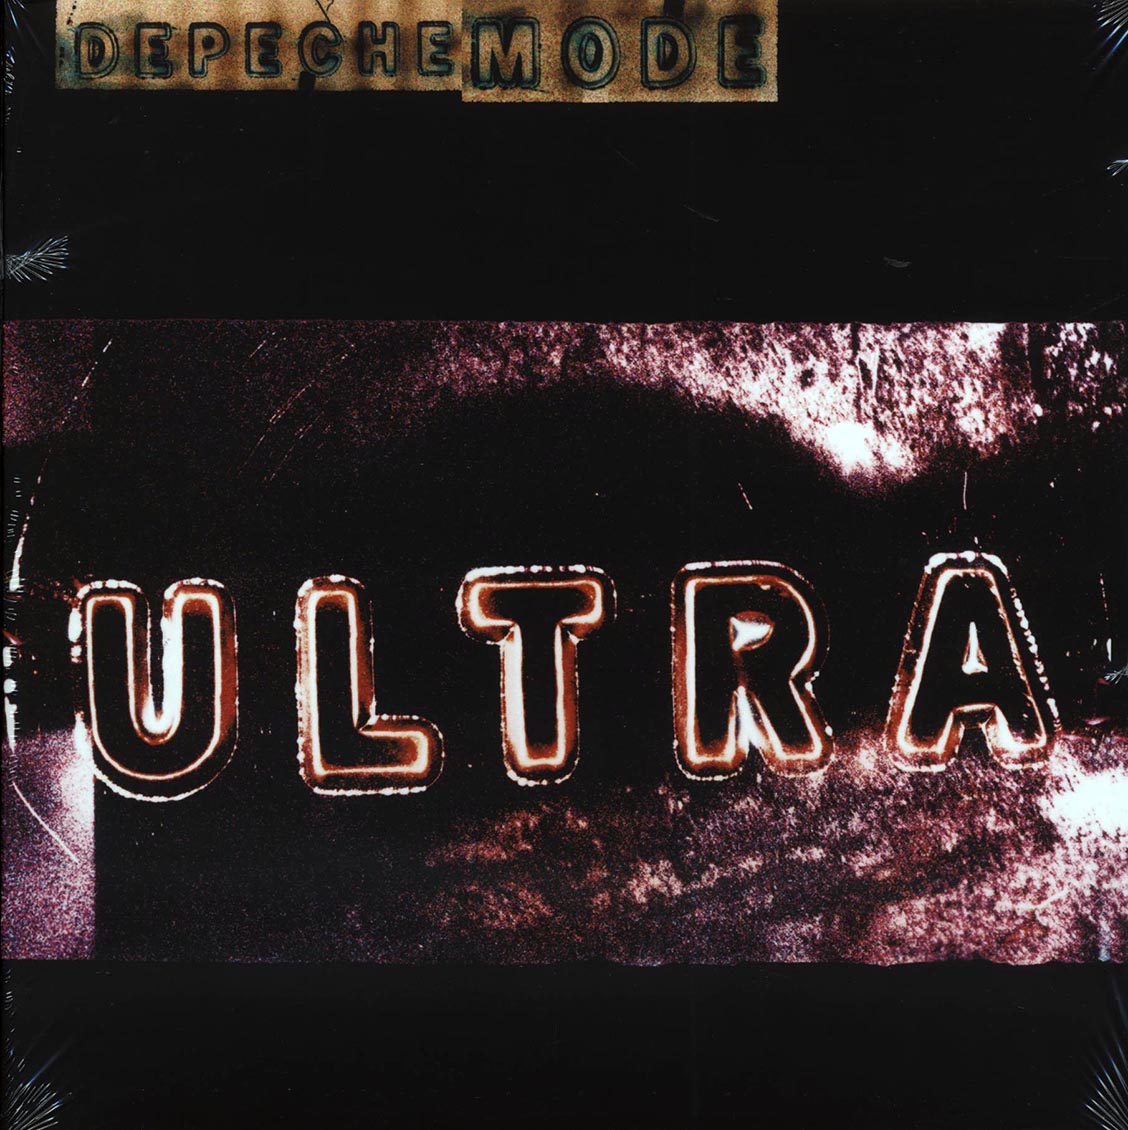 Depeche Mode - Ultra (2xLP) (remastered) - Vinyl LP